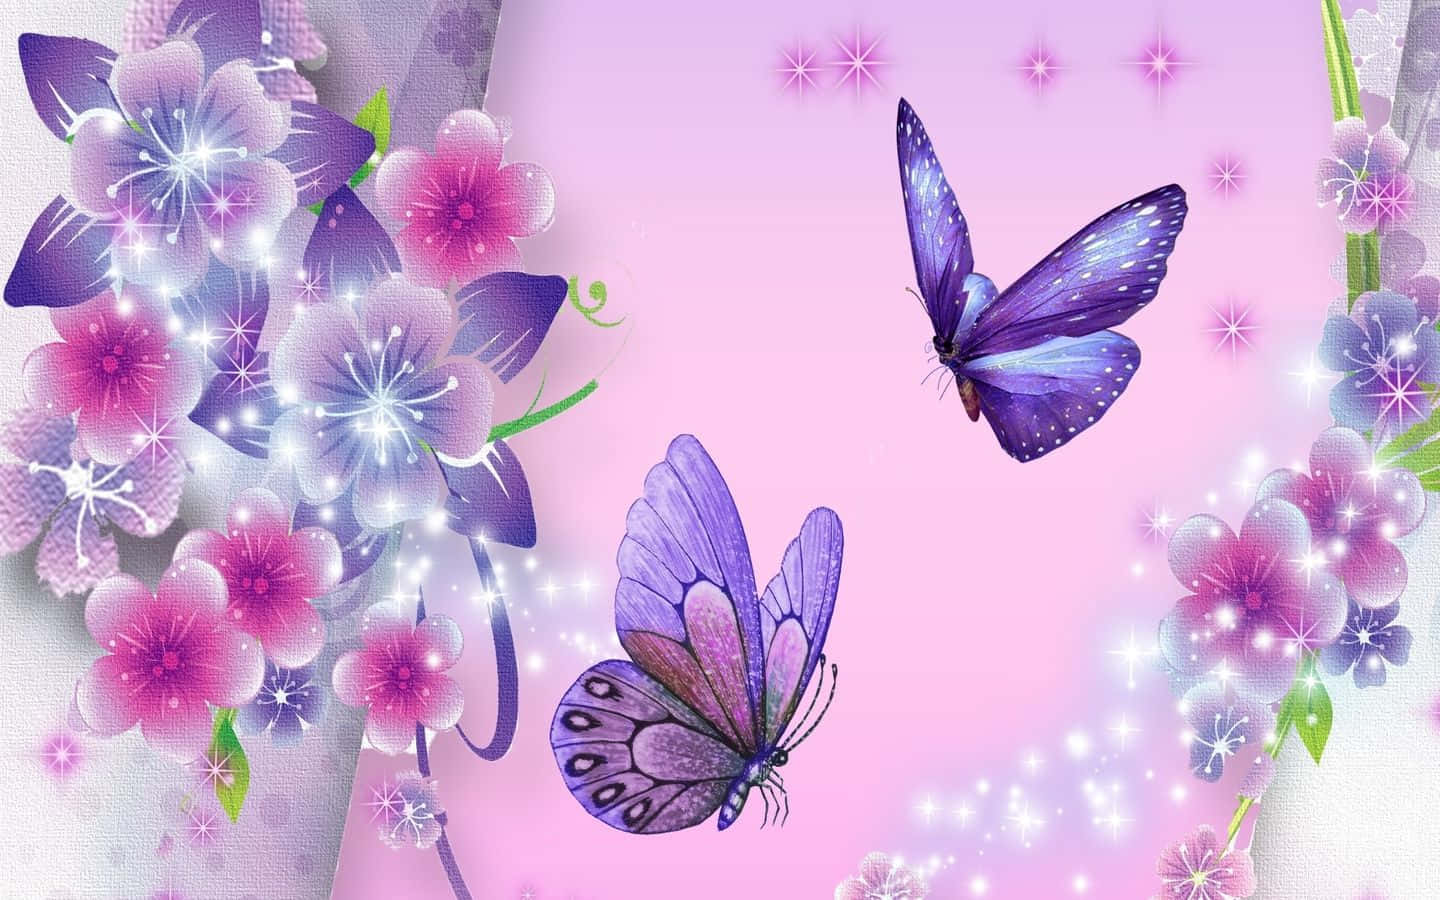 Duasborboletas Voando No Ar Em Um Fundo Cor-de-rosa.